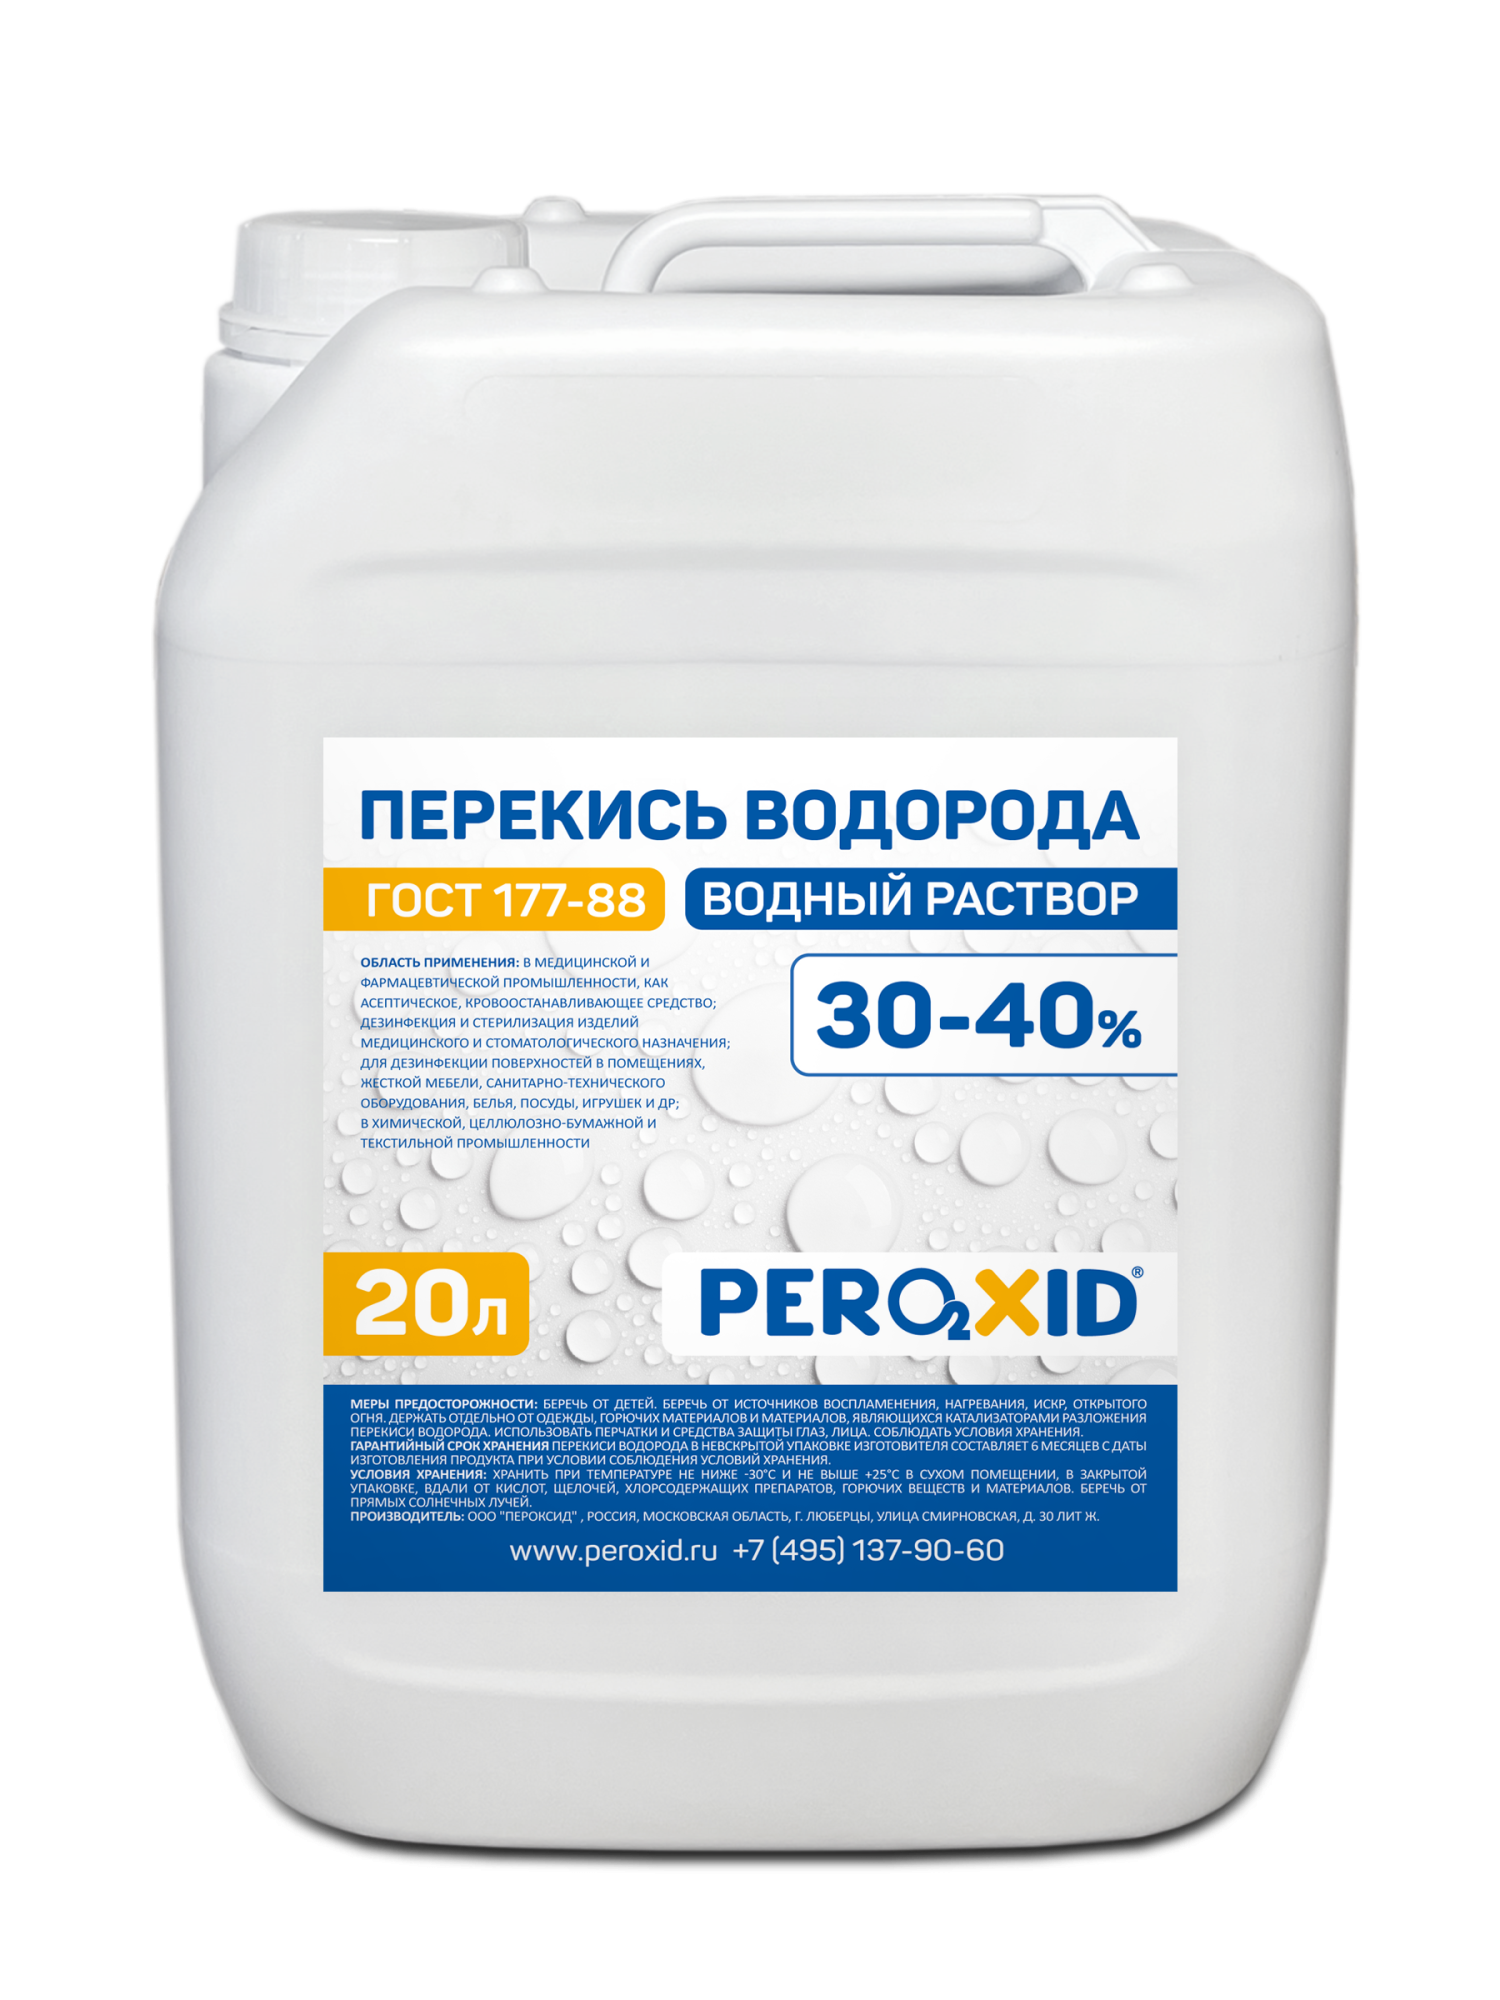 Перекись водорода водный раствор PEROXID 30-40% марка  ГОСТ 177-88  20 л/24 кг